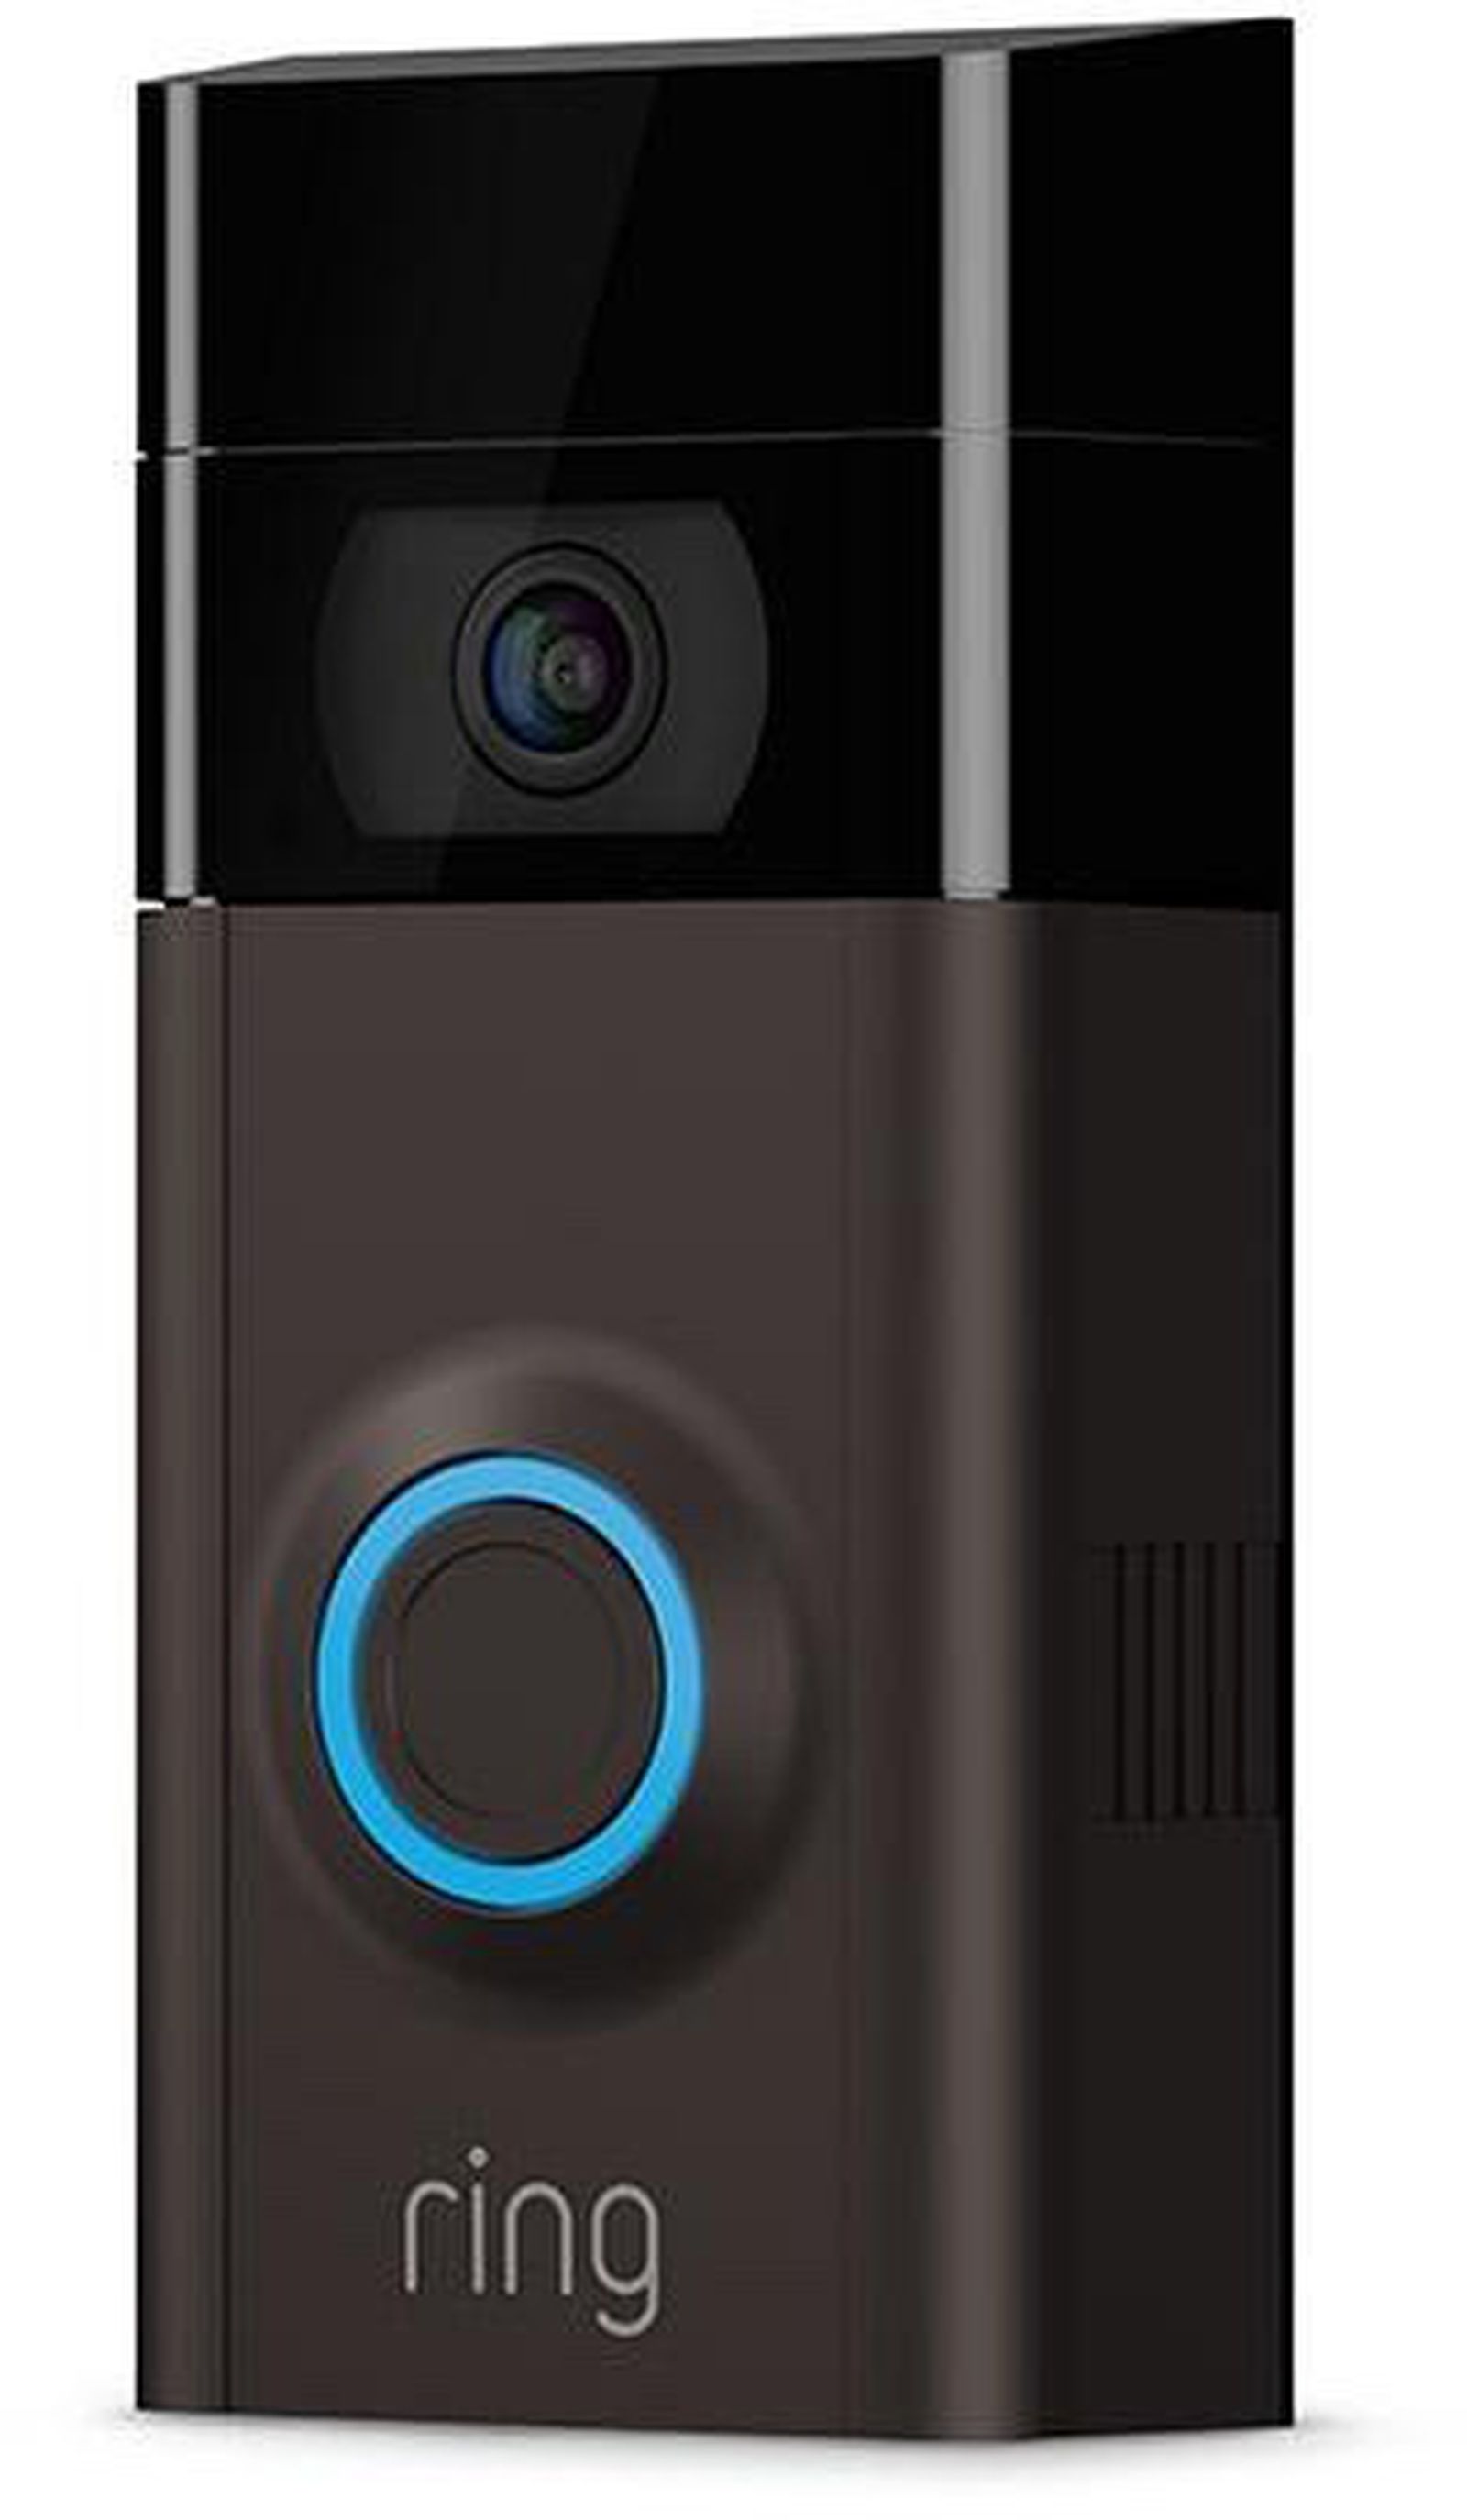 trechter bevind zich Vernietigen Amazon Acquiring Video Doorbell Maker Ring, but HomeKit Support is Still  Coming - MacRumors